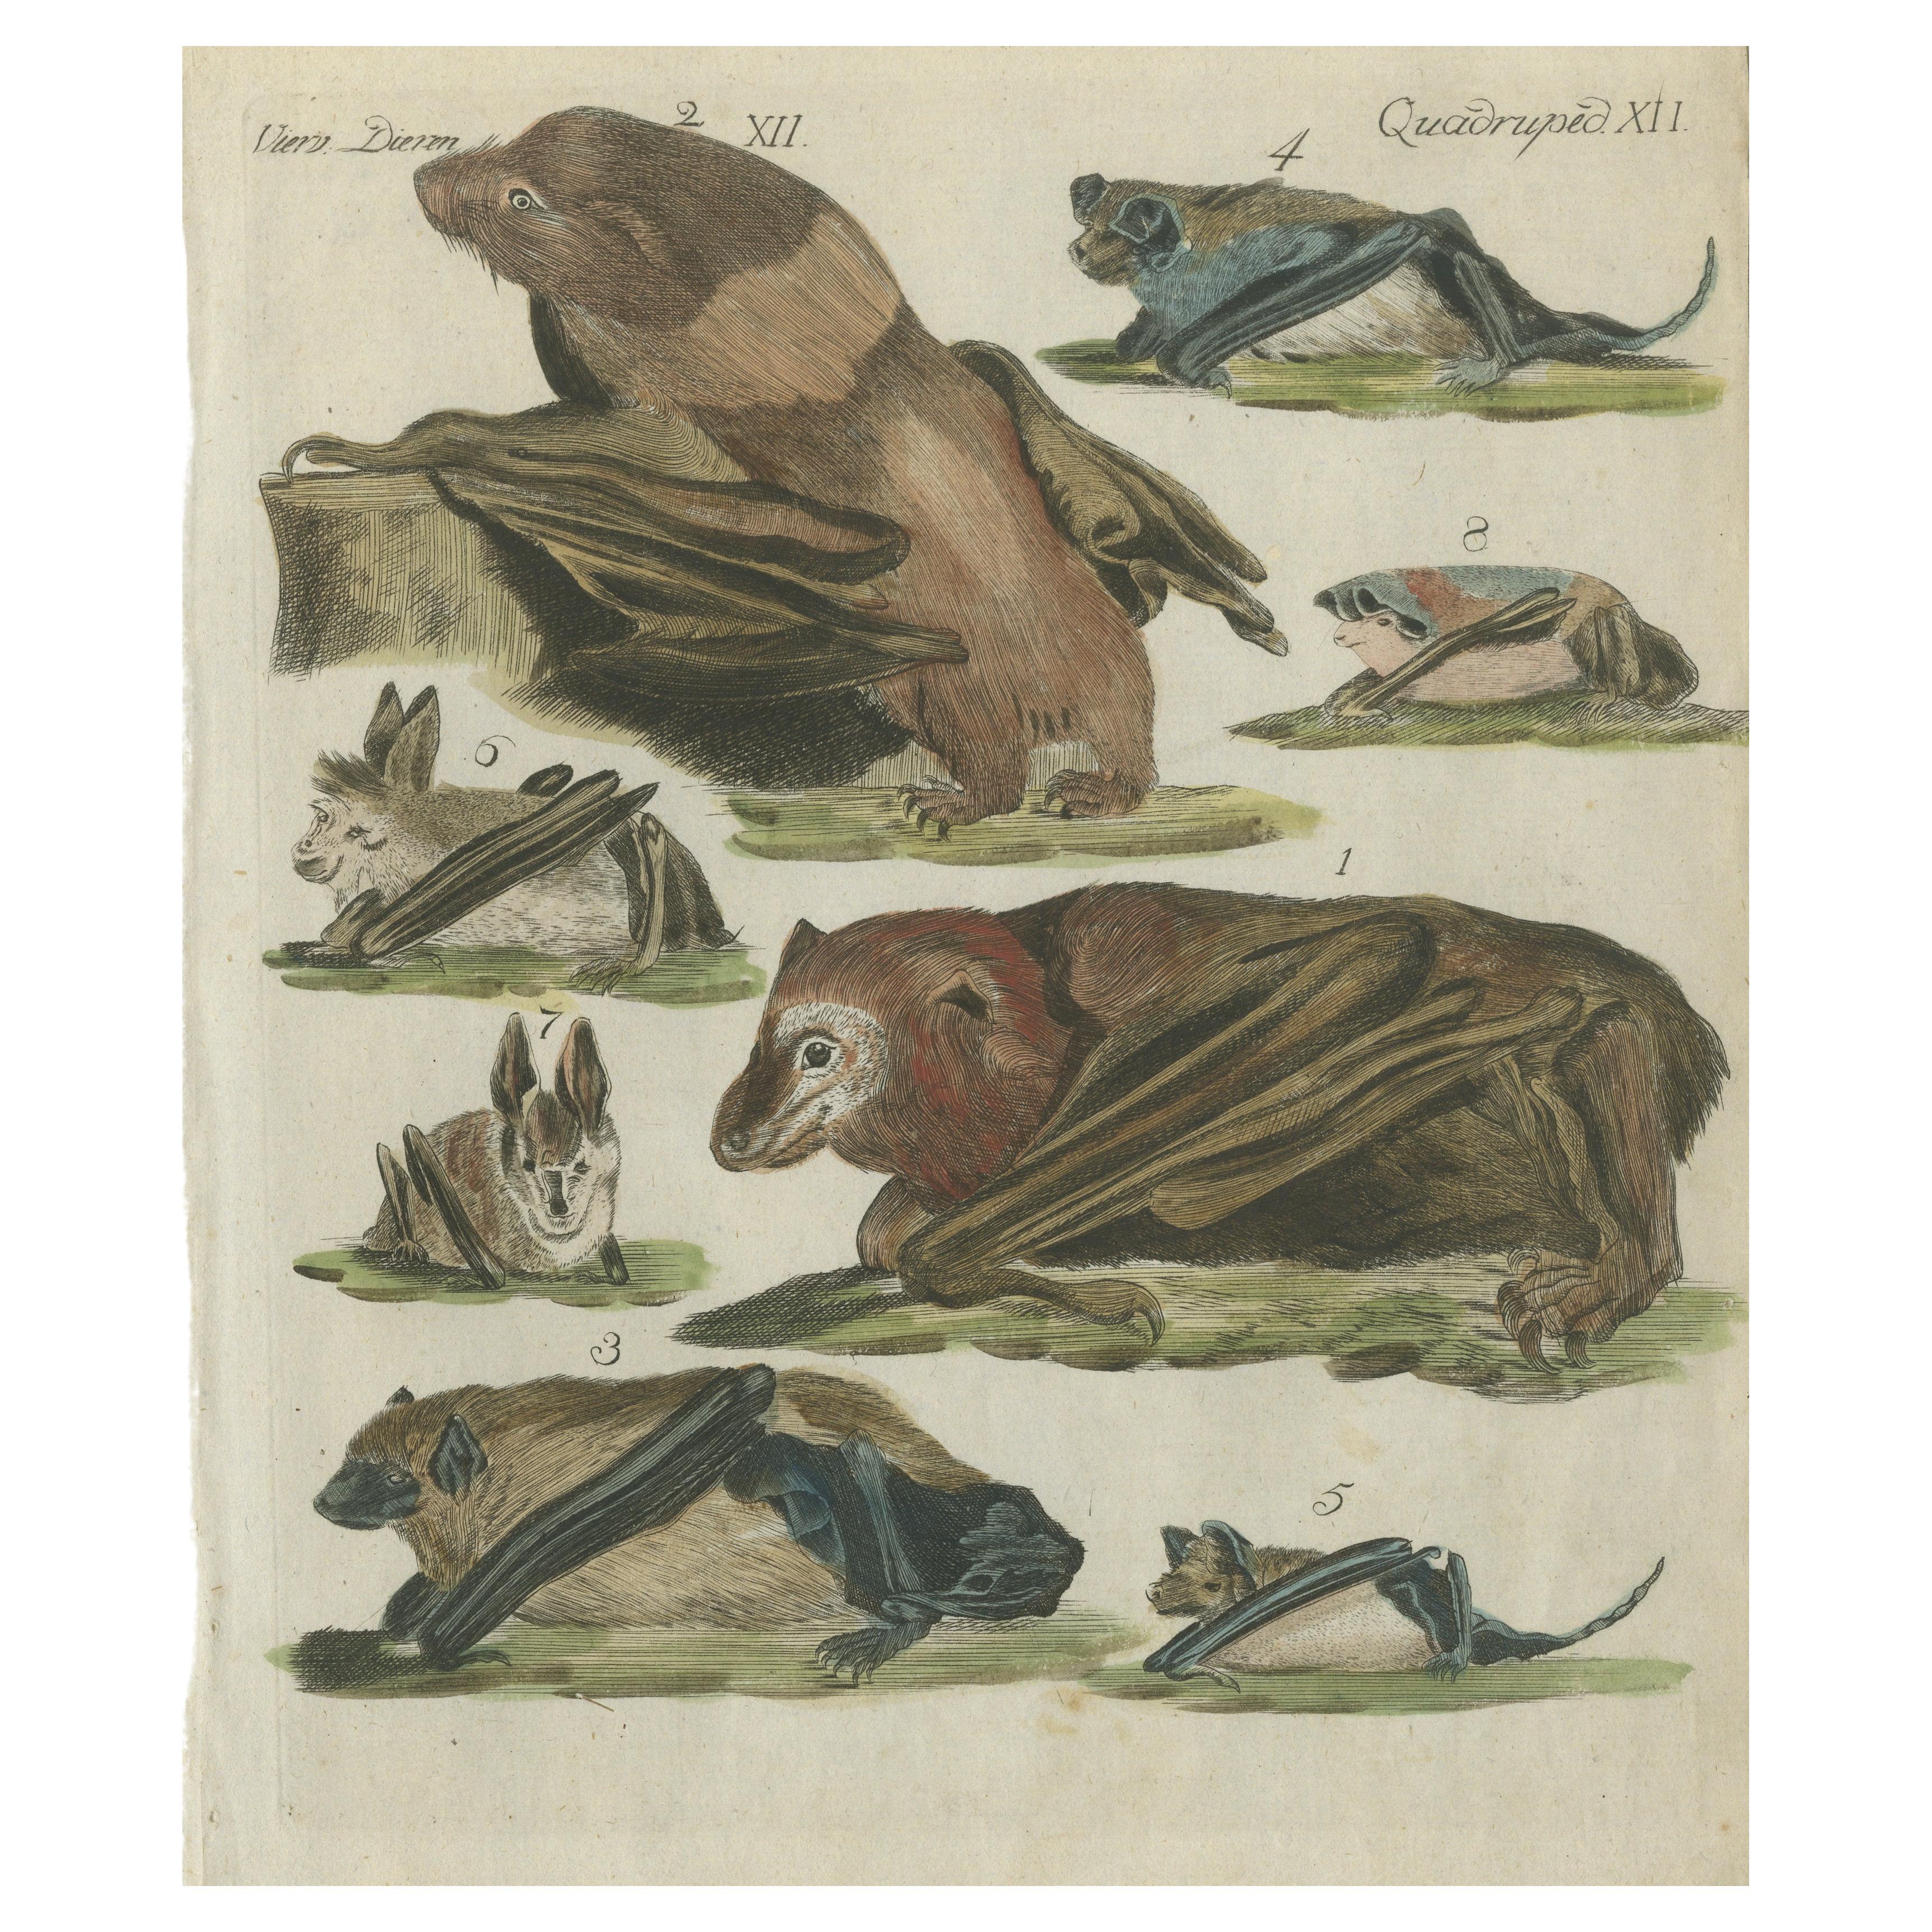 Handkolorierter antiker Druck von fliegenden Füchsen und Fledermäusen, um 1820